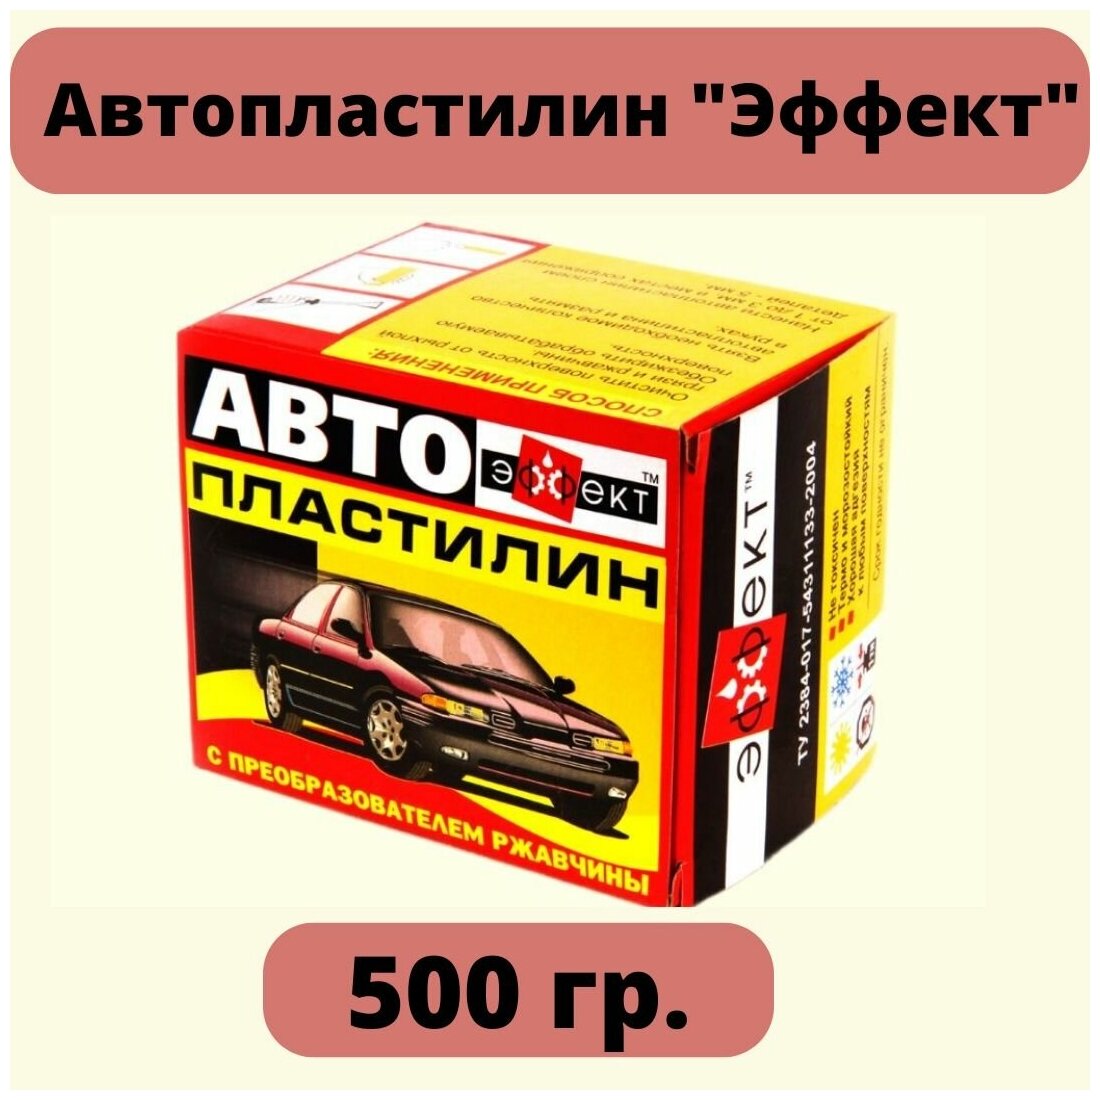 Автопластилин "Эффект" с преобразователем ржавчины 500 гр